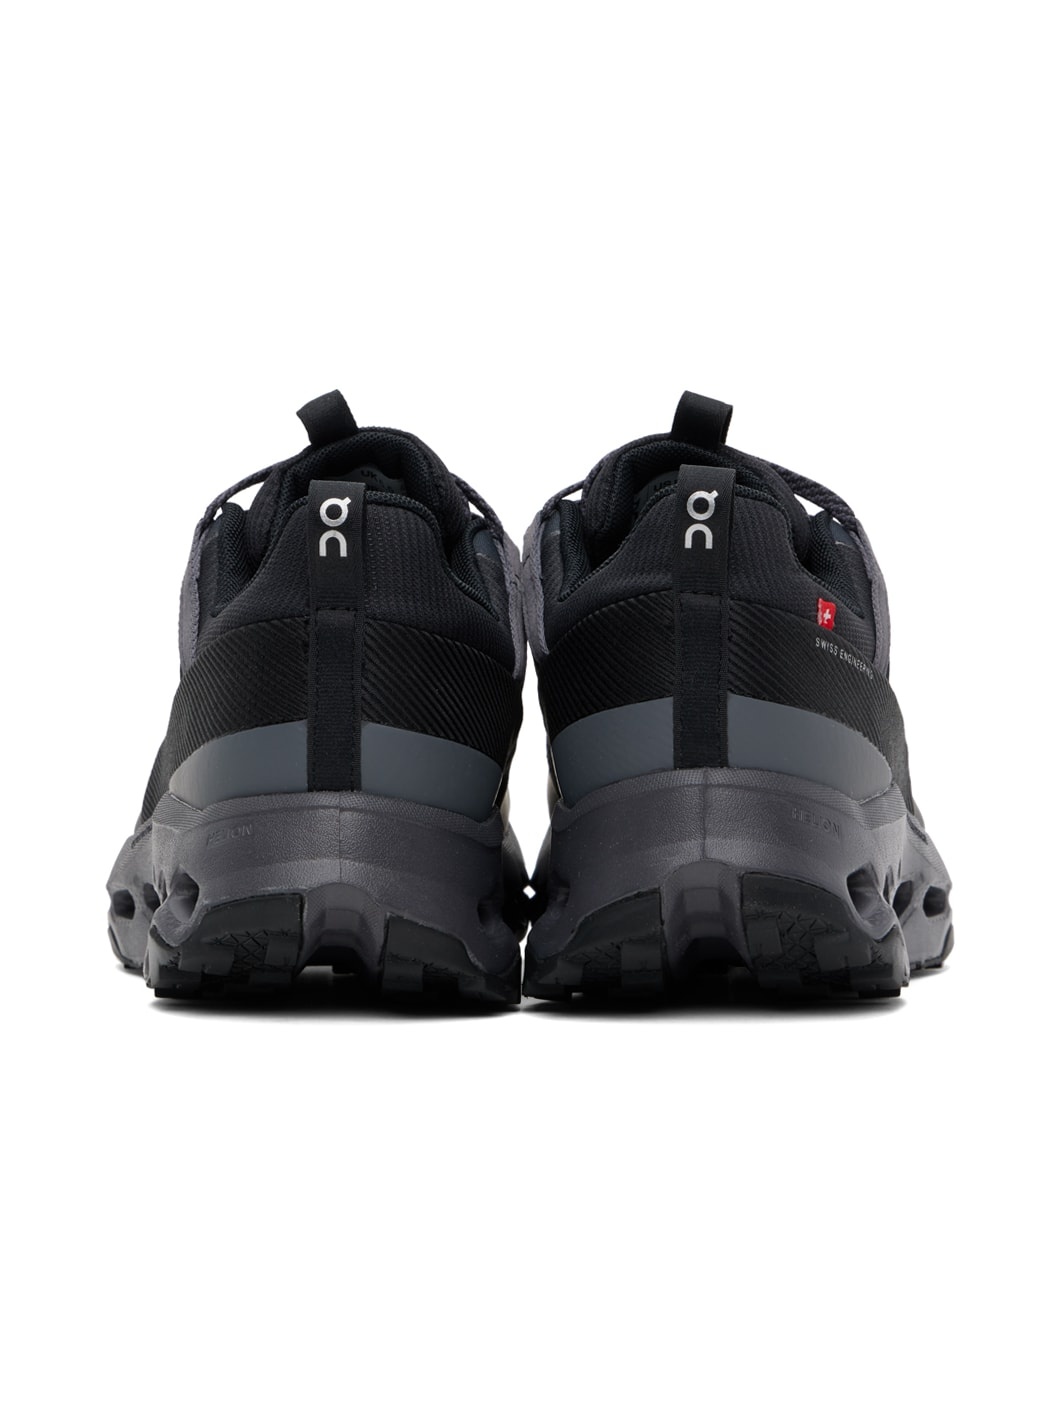 Black Cloudhorizon Waterproof Sneakers - 2